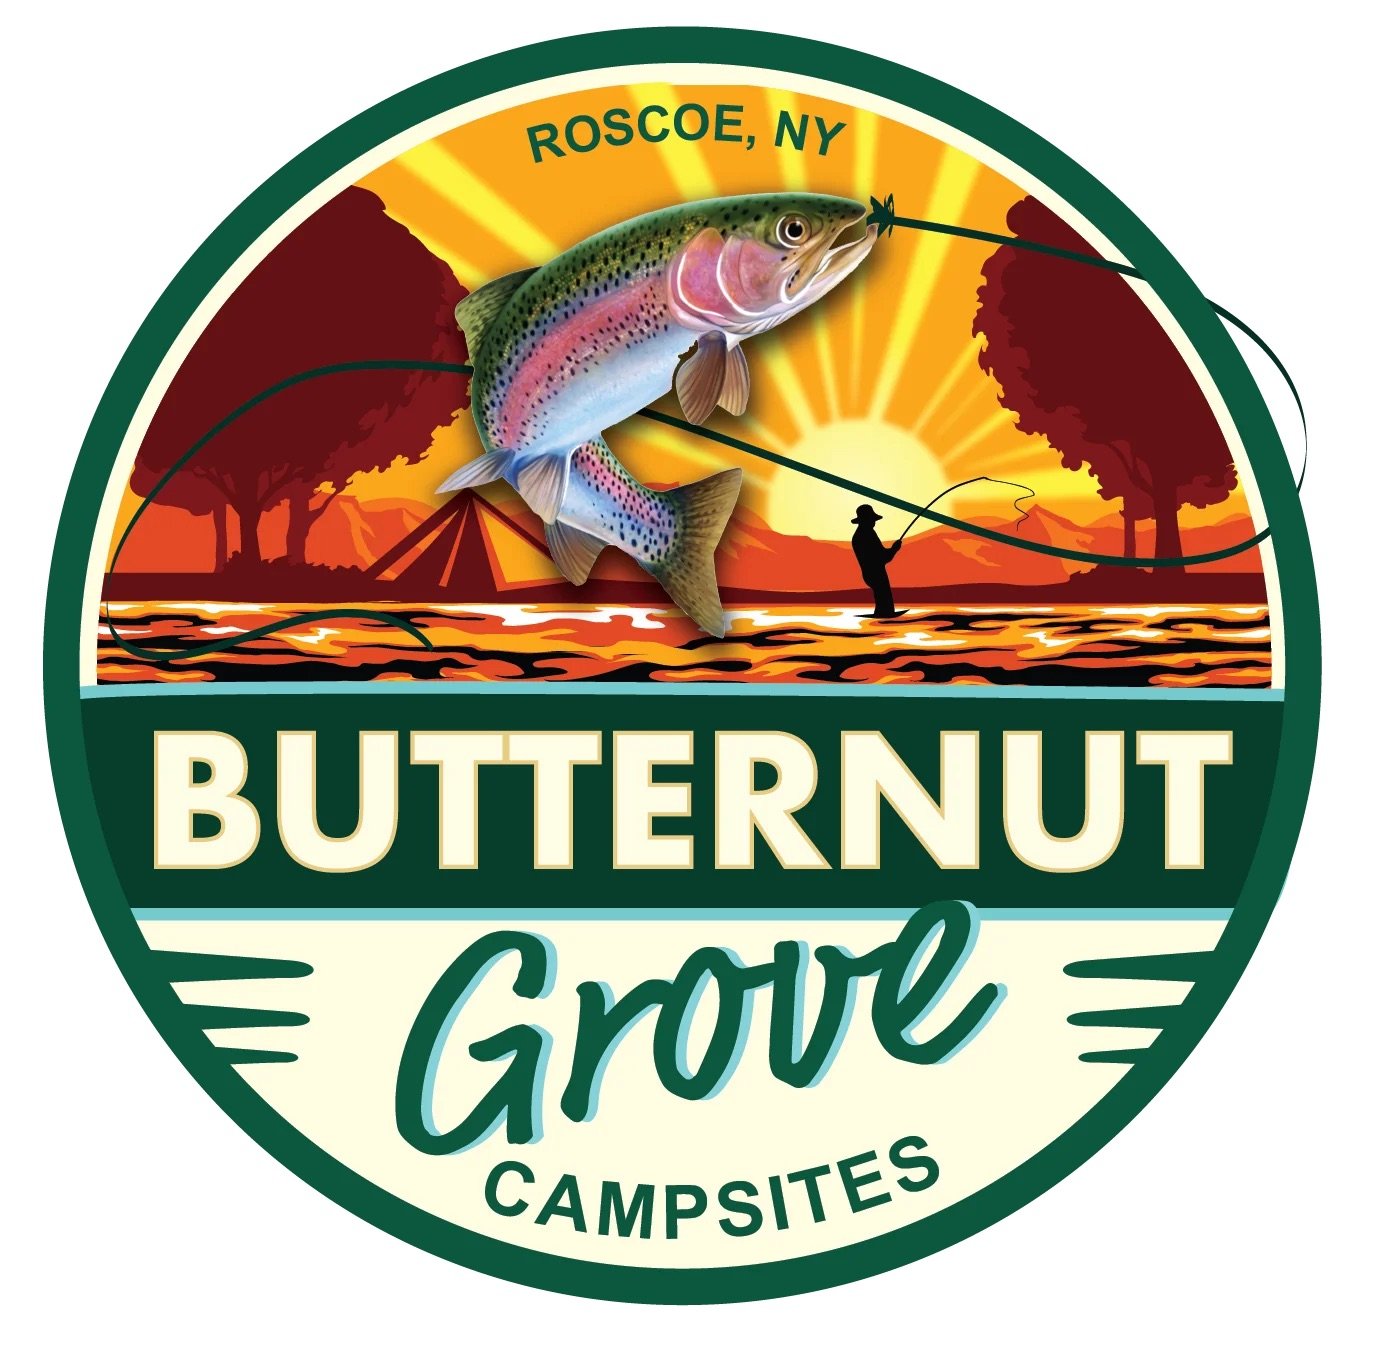 butternut-grove-campsites.jpeg